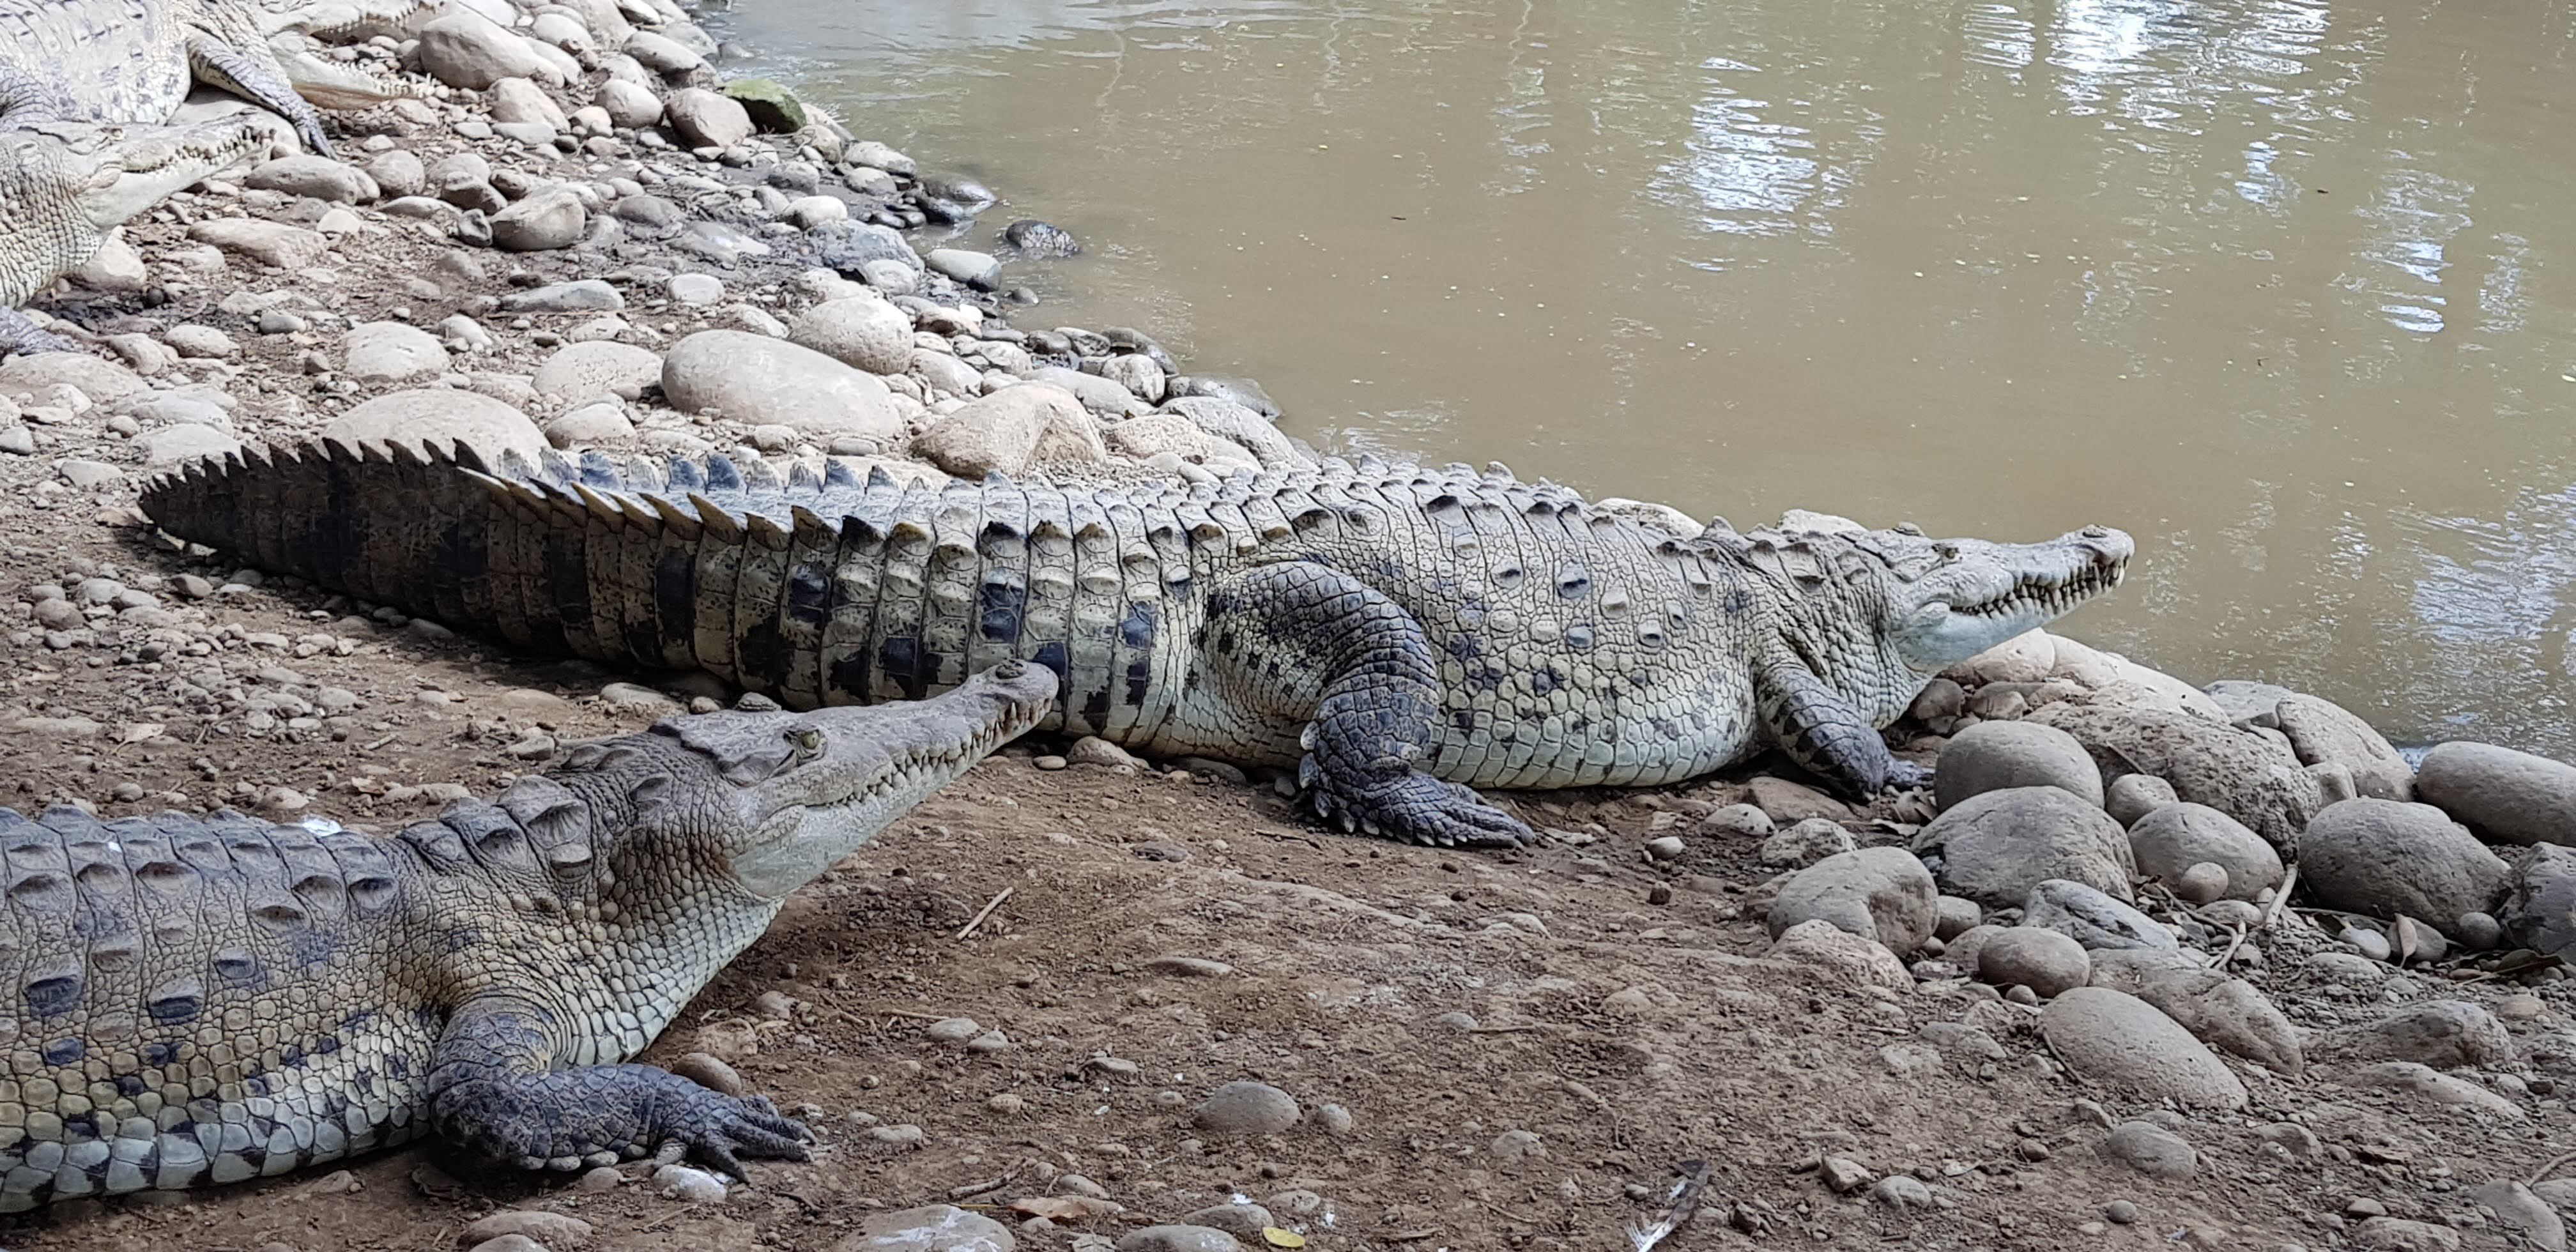 Documento del Minae afirma que los cocodrilos y caimanes son de los animales más incomprendidos y temidos, por lo que a menudo son el centro de información sensacionalista. Foto: Cortesía Iván Sandoval.